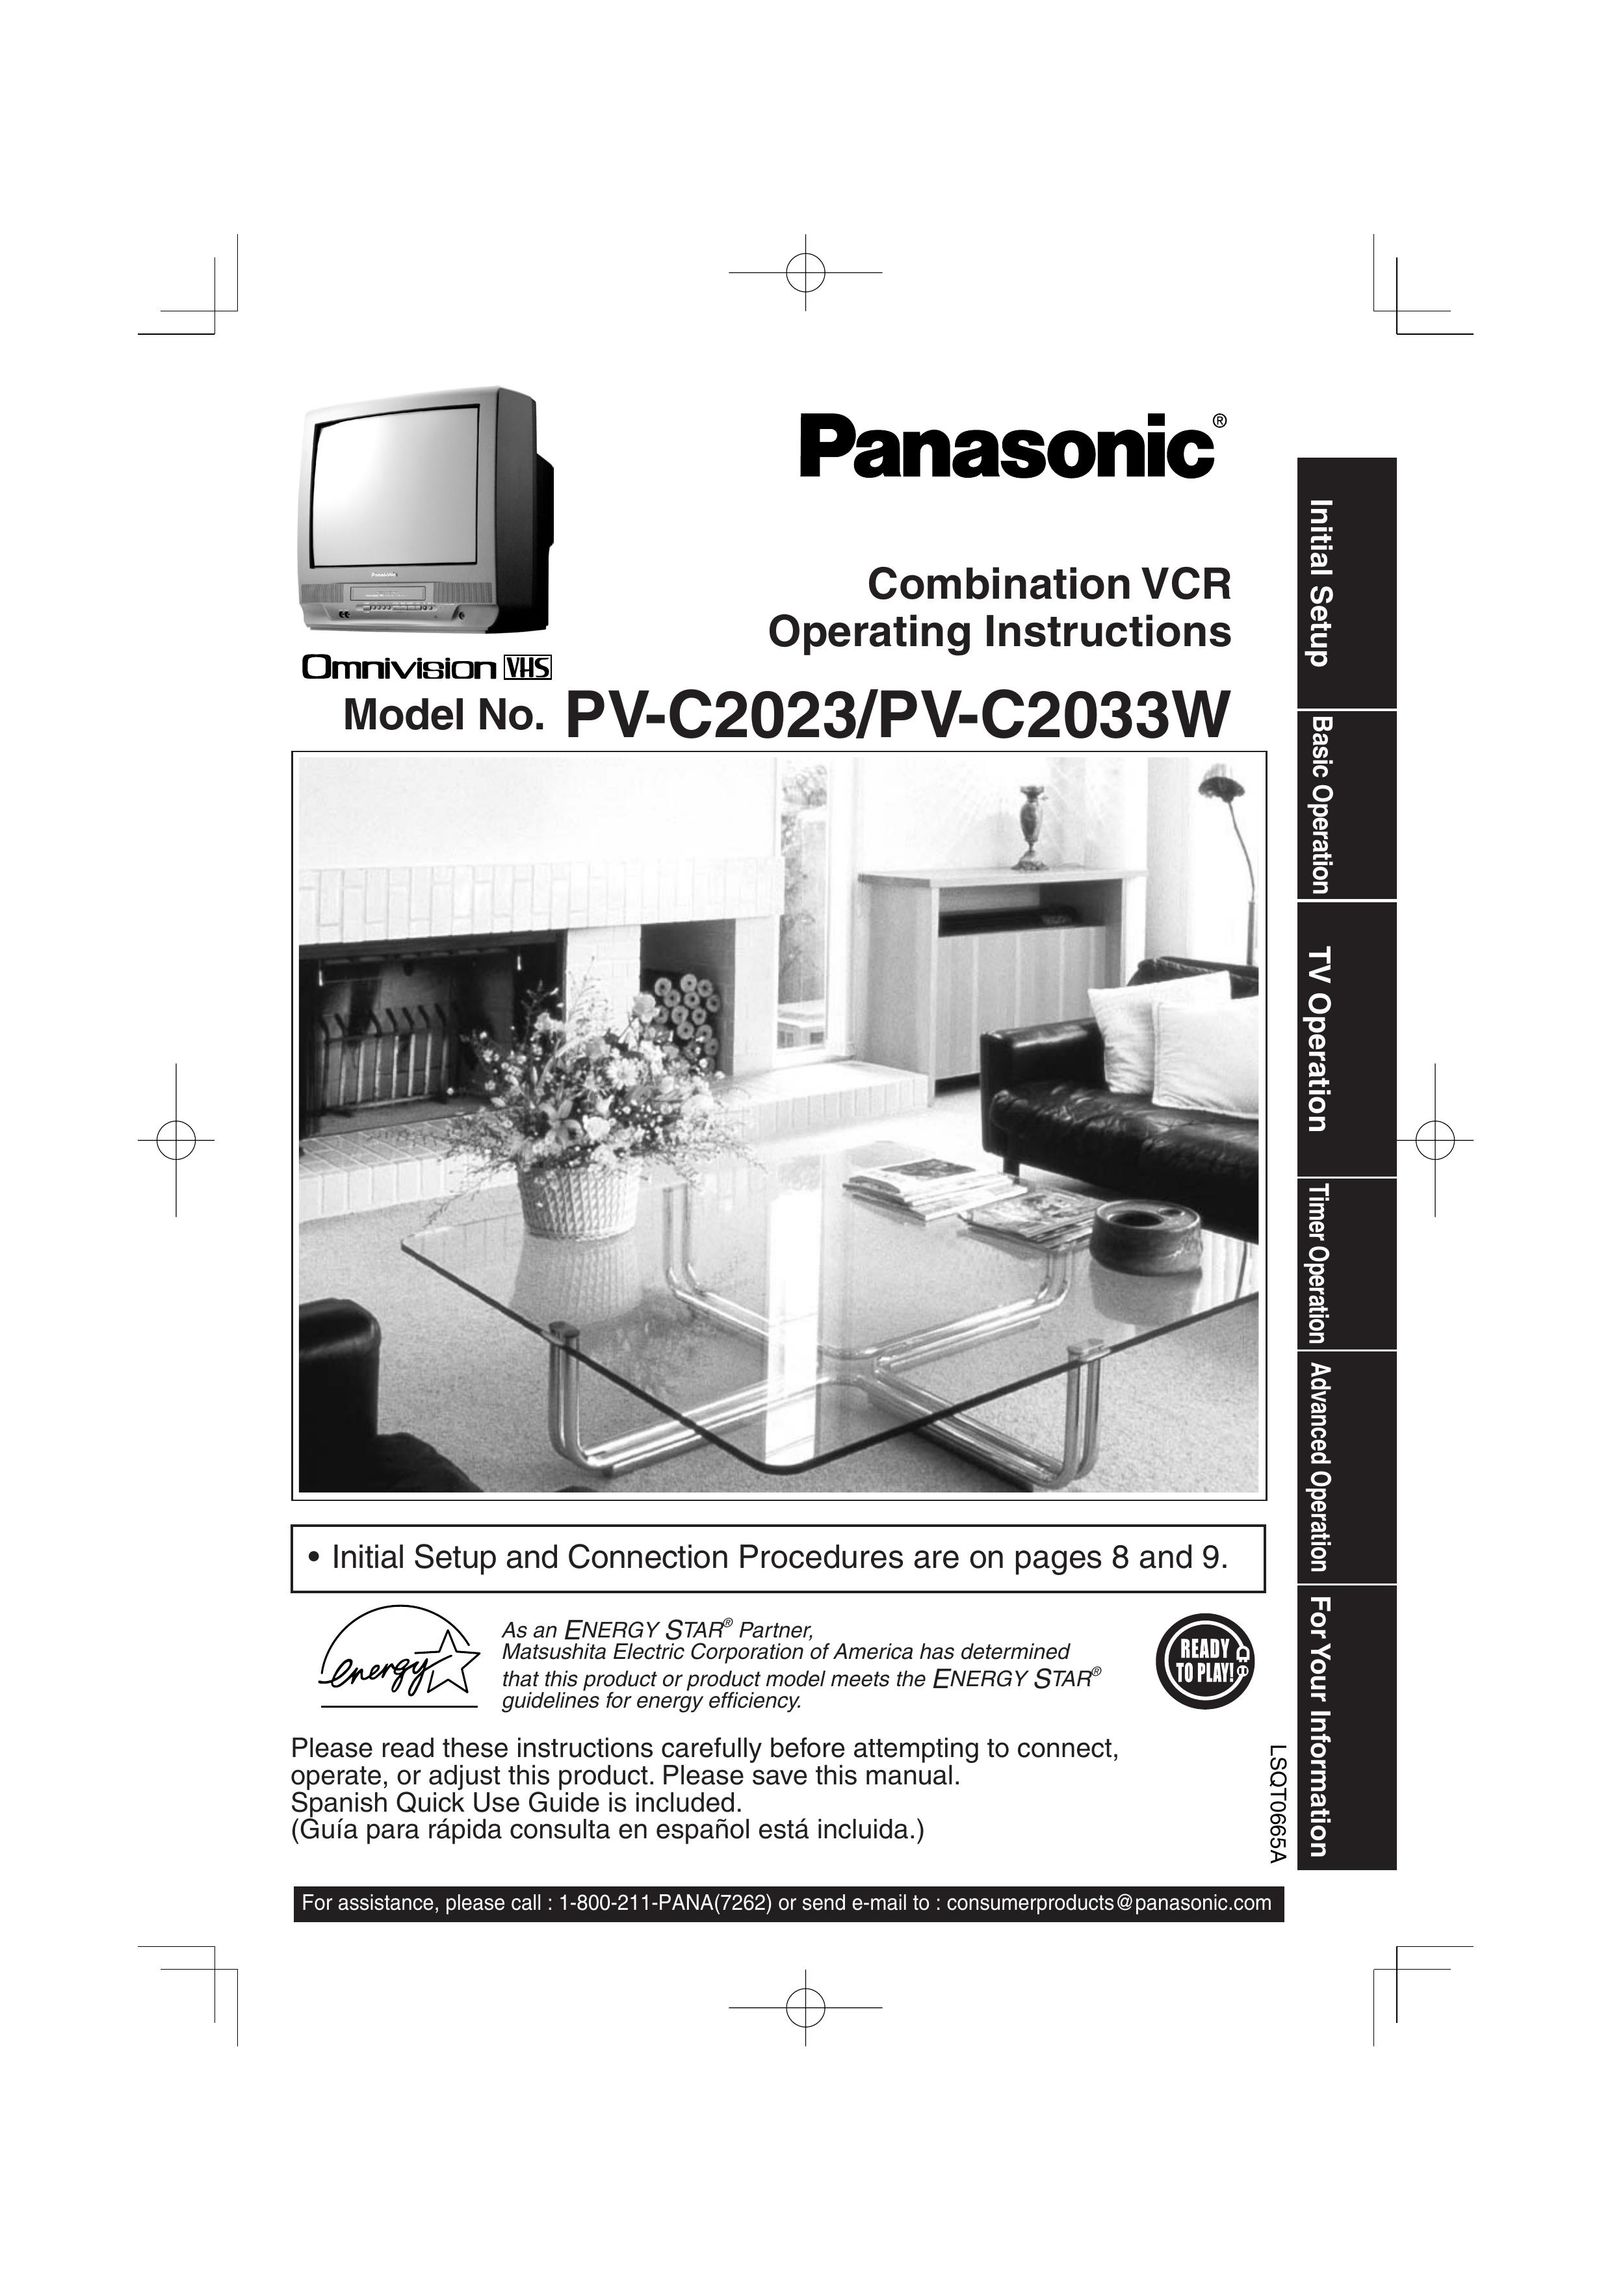 Panasonic PV C2023 TV VCR Combo User Manual